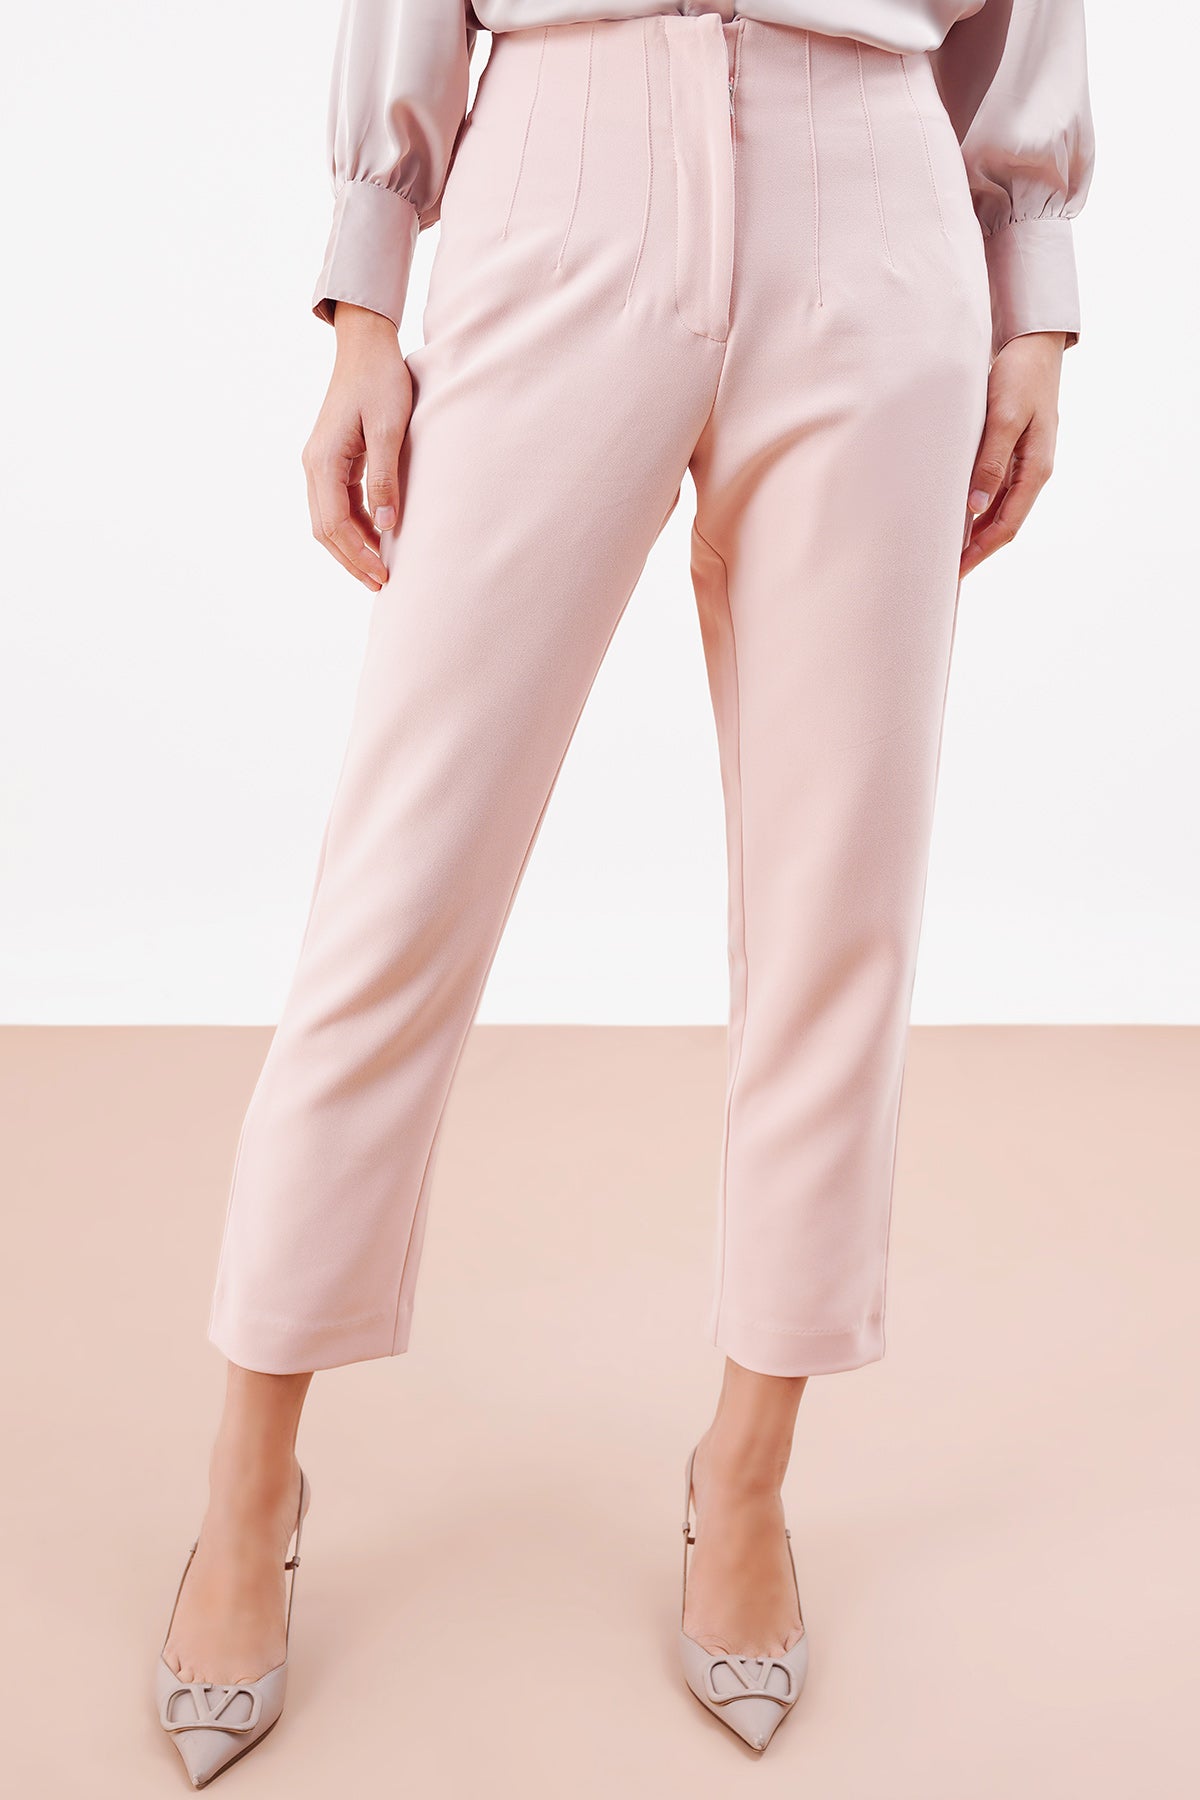 Basic HIgh Waisted Pants - Light Pink